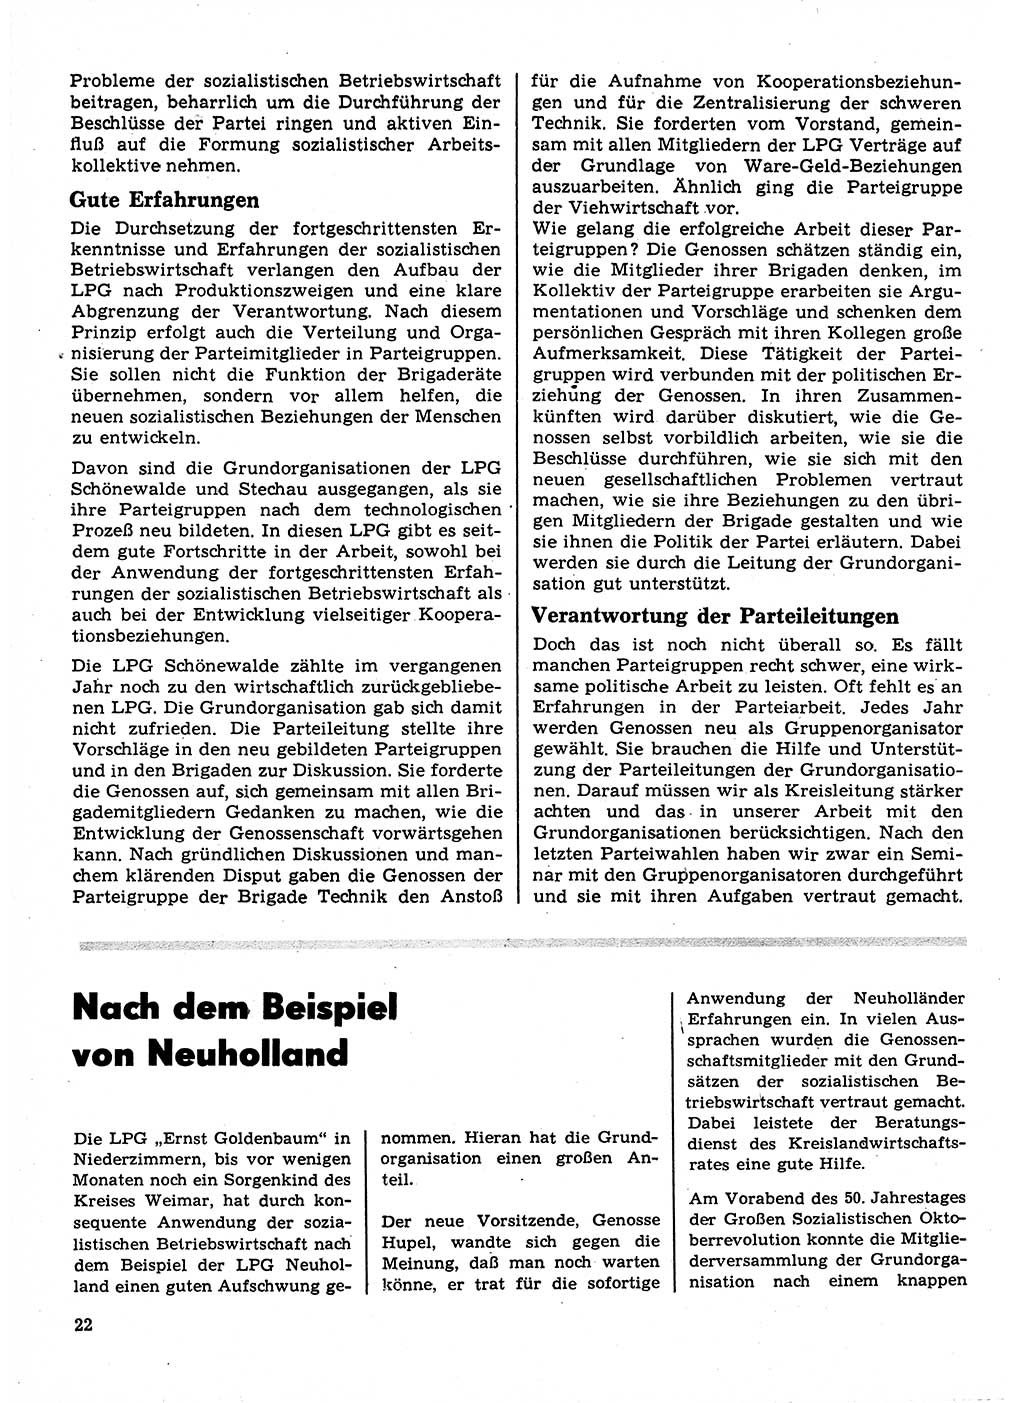 Neuer Weg (NW), Organ des Zentralkomitees (ZK) der SED (Sozialistische Einheitspartei Deutschlands) für Fragen des Parteilebens, 23. Jahrgang [Deutsche Demokratische Republik (DDR)] 1968, Seite 22 (NW ZK SED DDR 1968, S. 22)